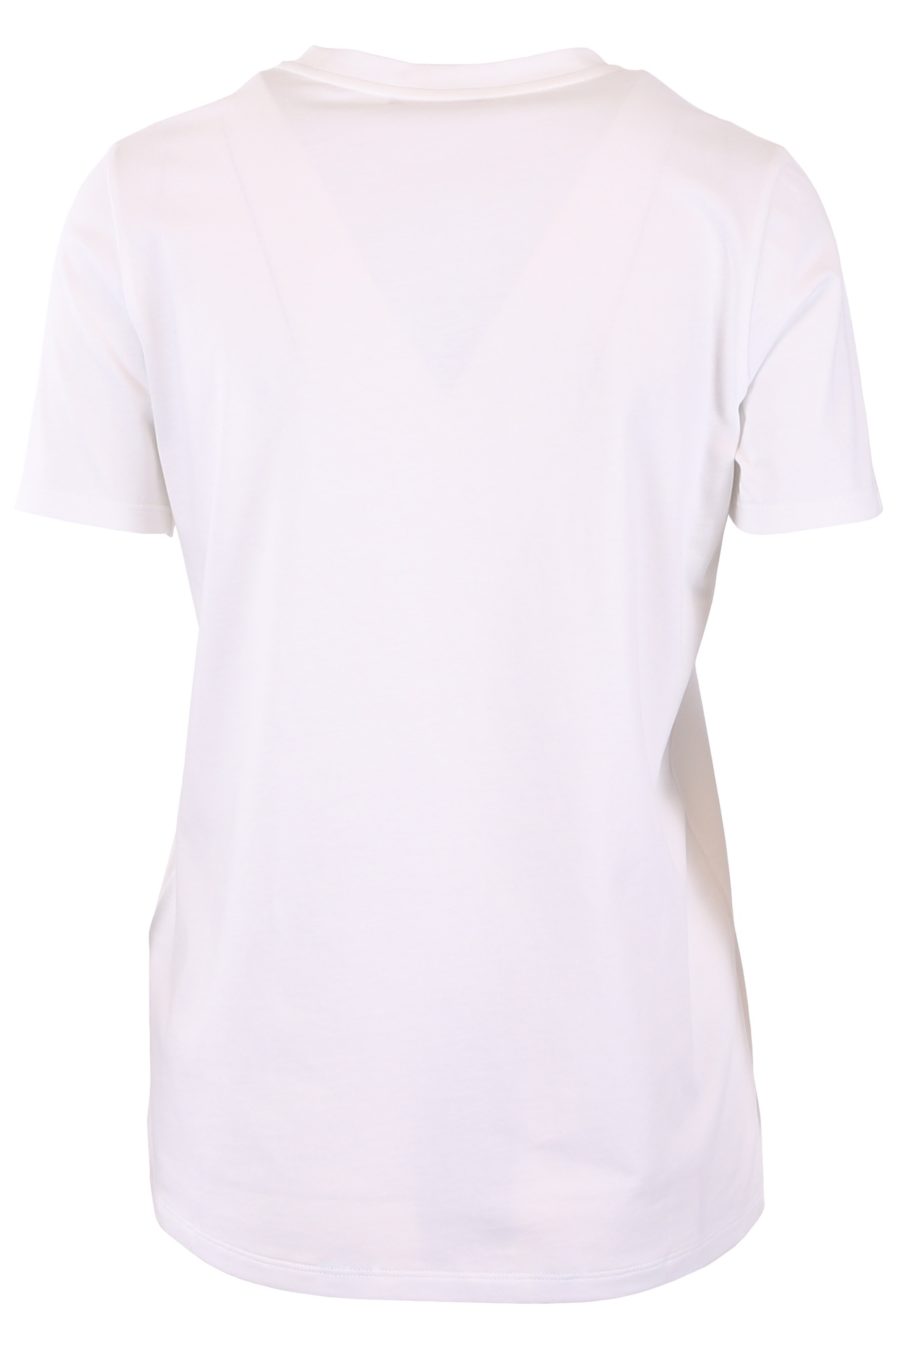 Camiseta Balmain blanca con logo negro - 6b8ae18f062637f3165b6f4f5236b7c042ab6943